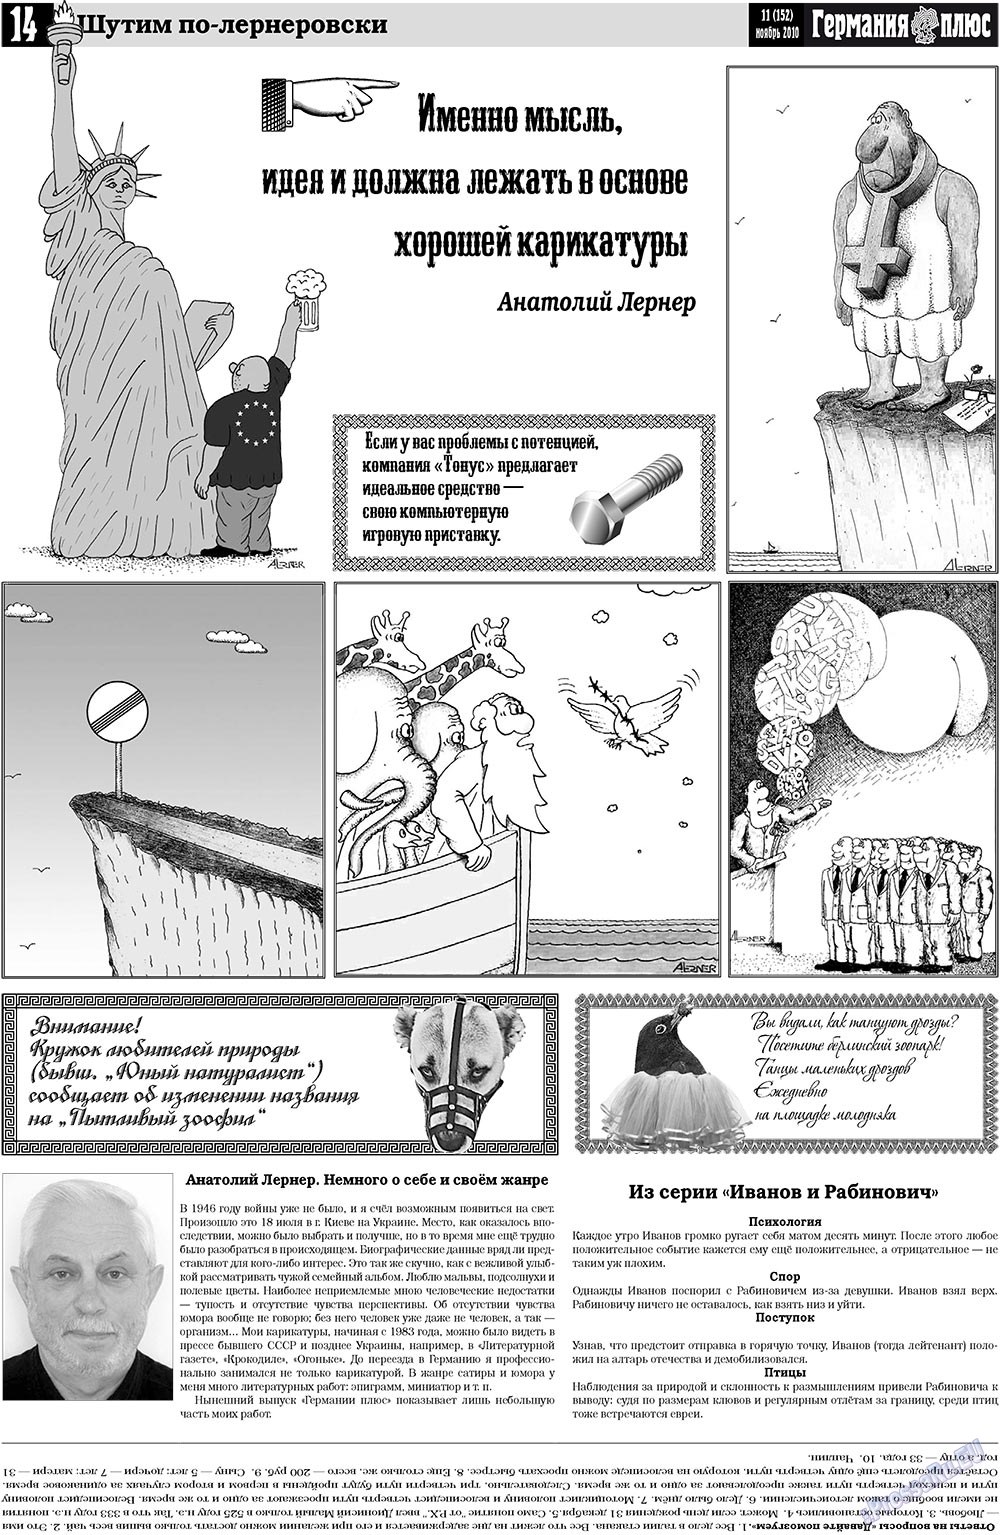 Германия плюс, газета. 2010 №11 стр.14